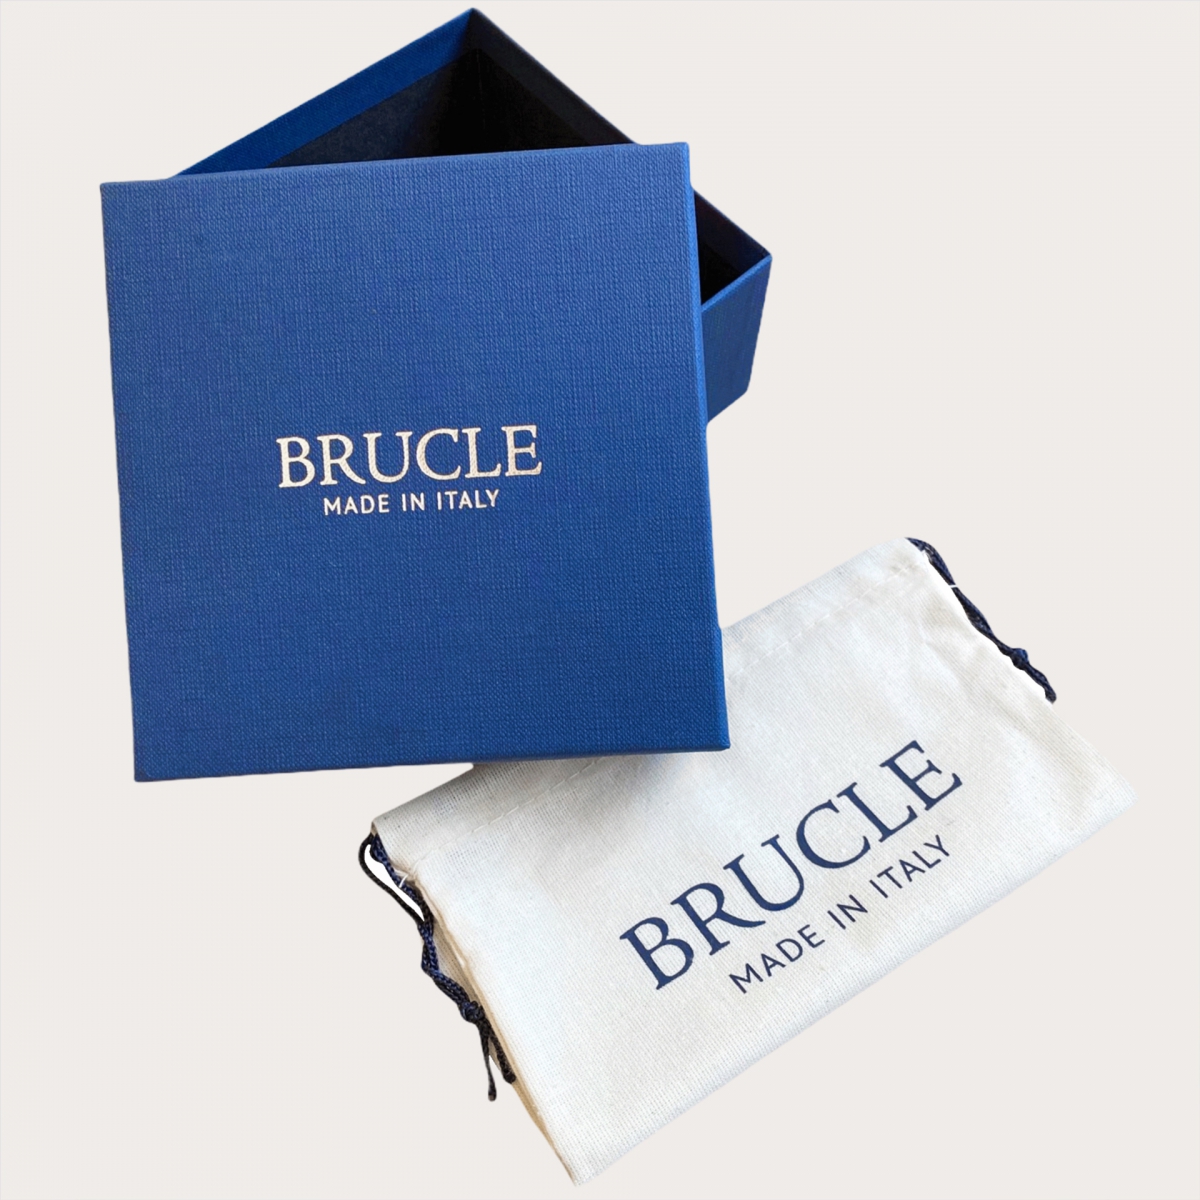 BRUCLE Cintura in pelle di pitone H35 tamponata a mano con fibbia lucida argento, dusty blue